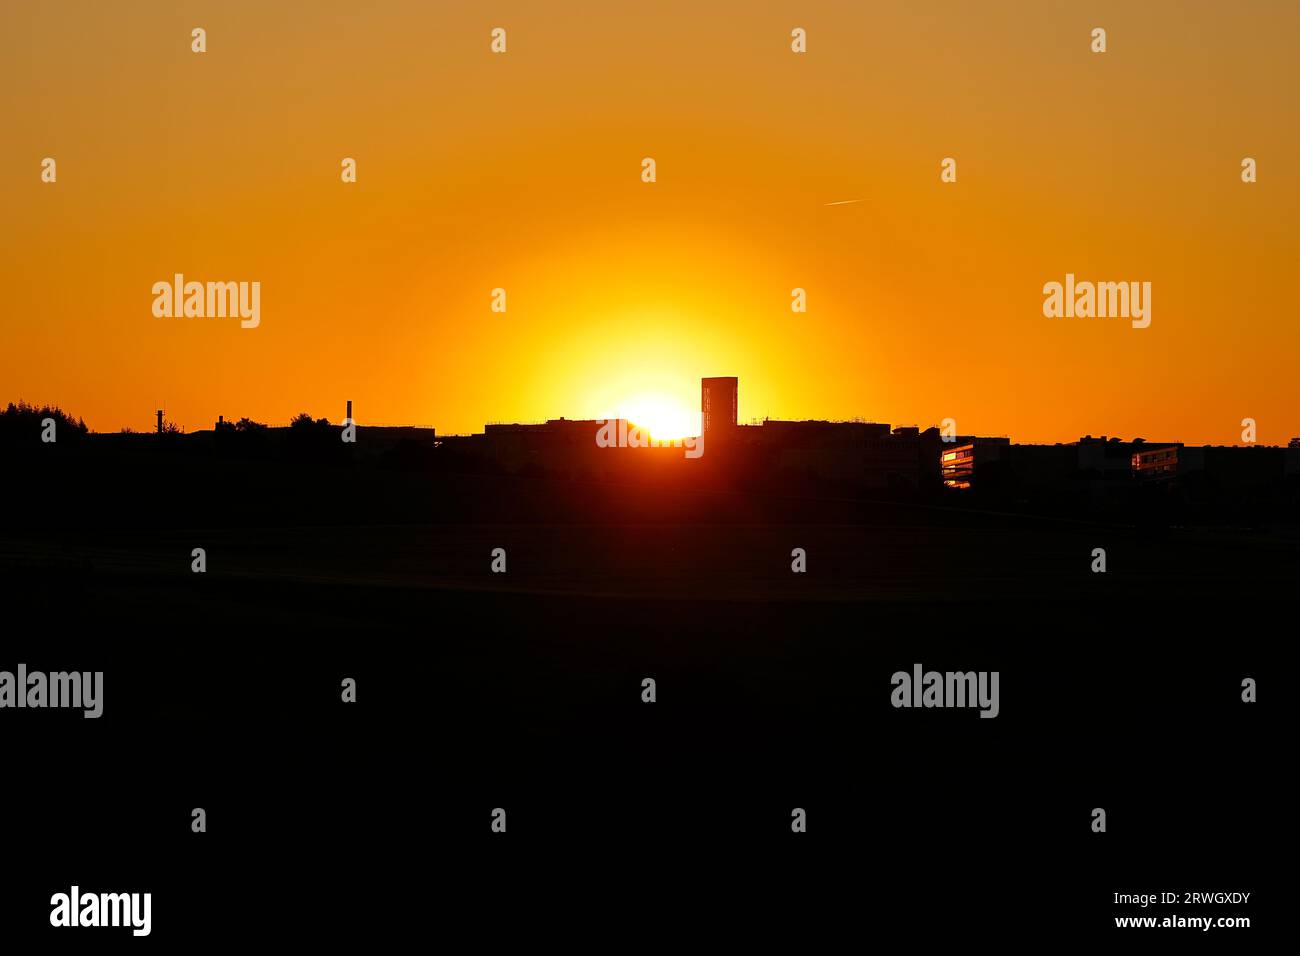 Sonnenuntergang mit einem scharfen Kontrast von hell bis dunkel Stockfoto